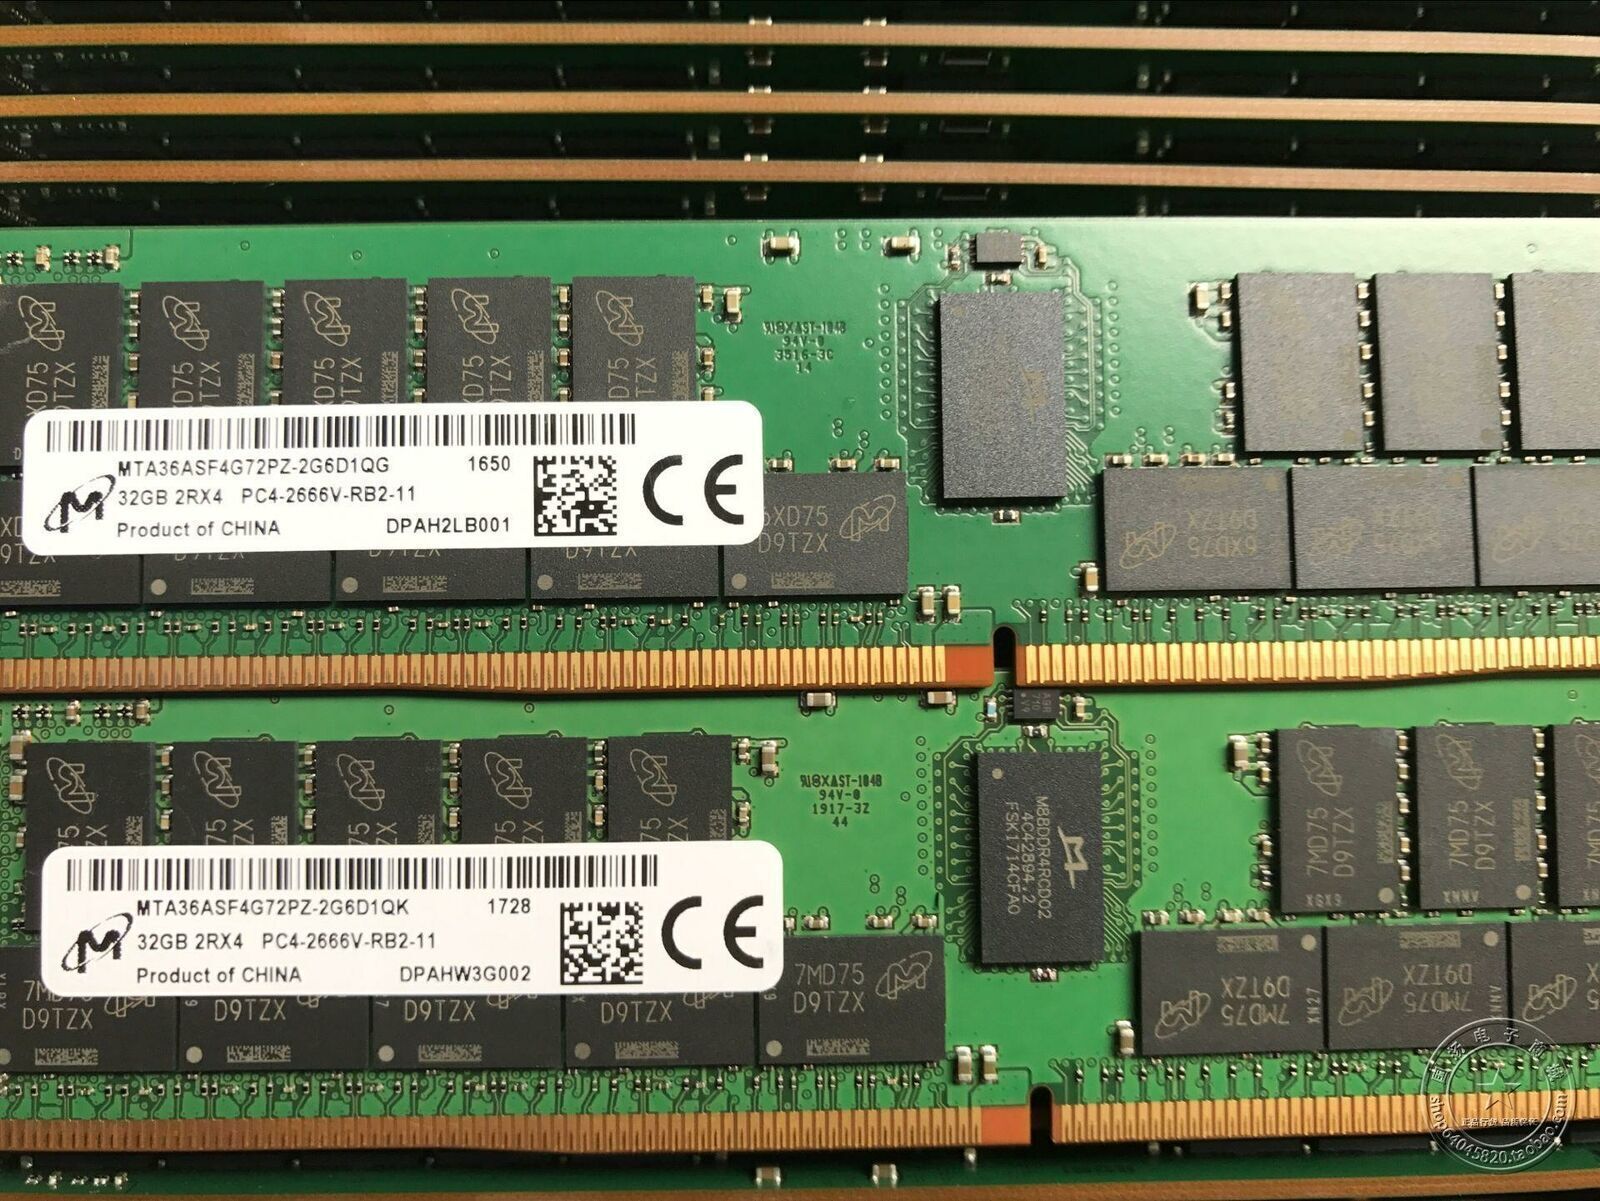 32GB Micron MT DDR4 2Rx4 2666 ECC RDIMM PC4-2666V-RB2 MTA36ASF4G72PZ-2G6D1QG RAM